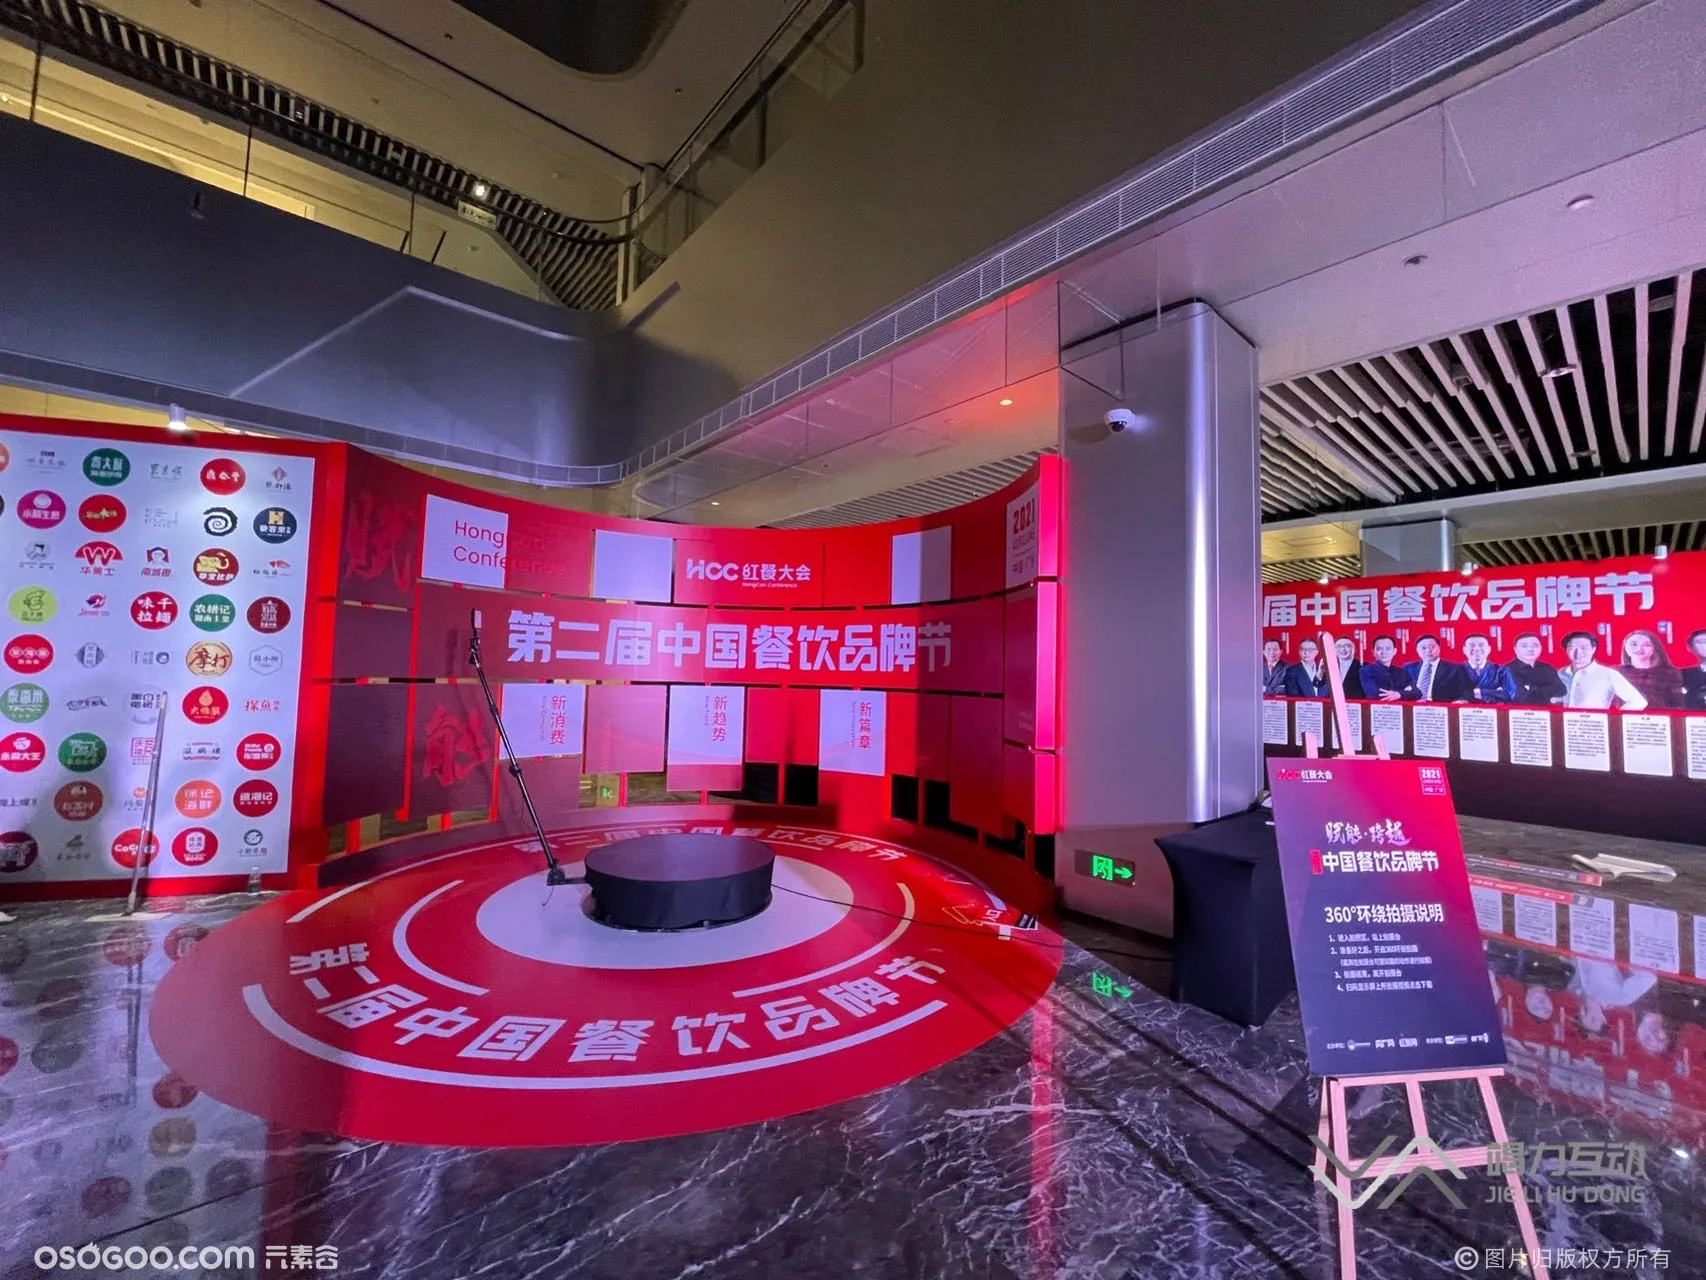 第十二届中国饮食品牌节/360升格拍照定制高端互动